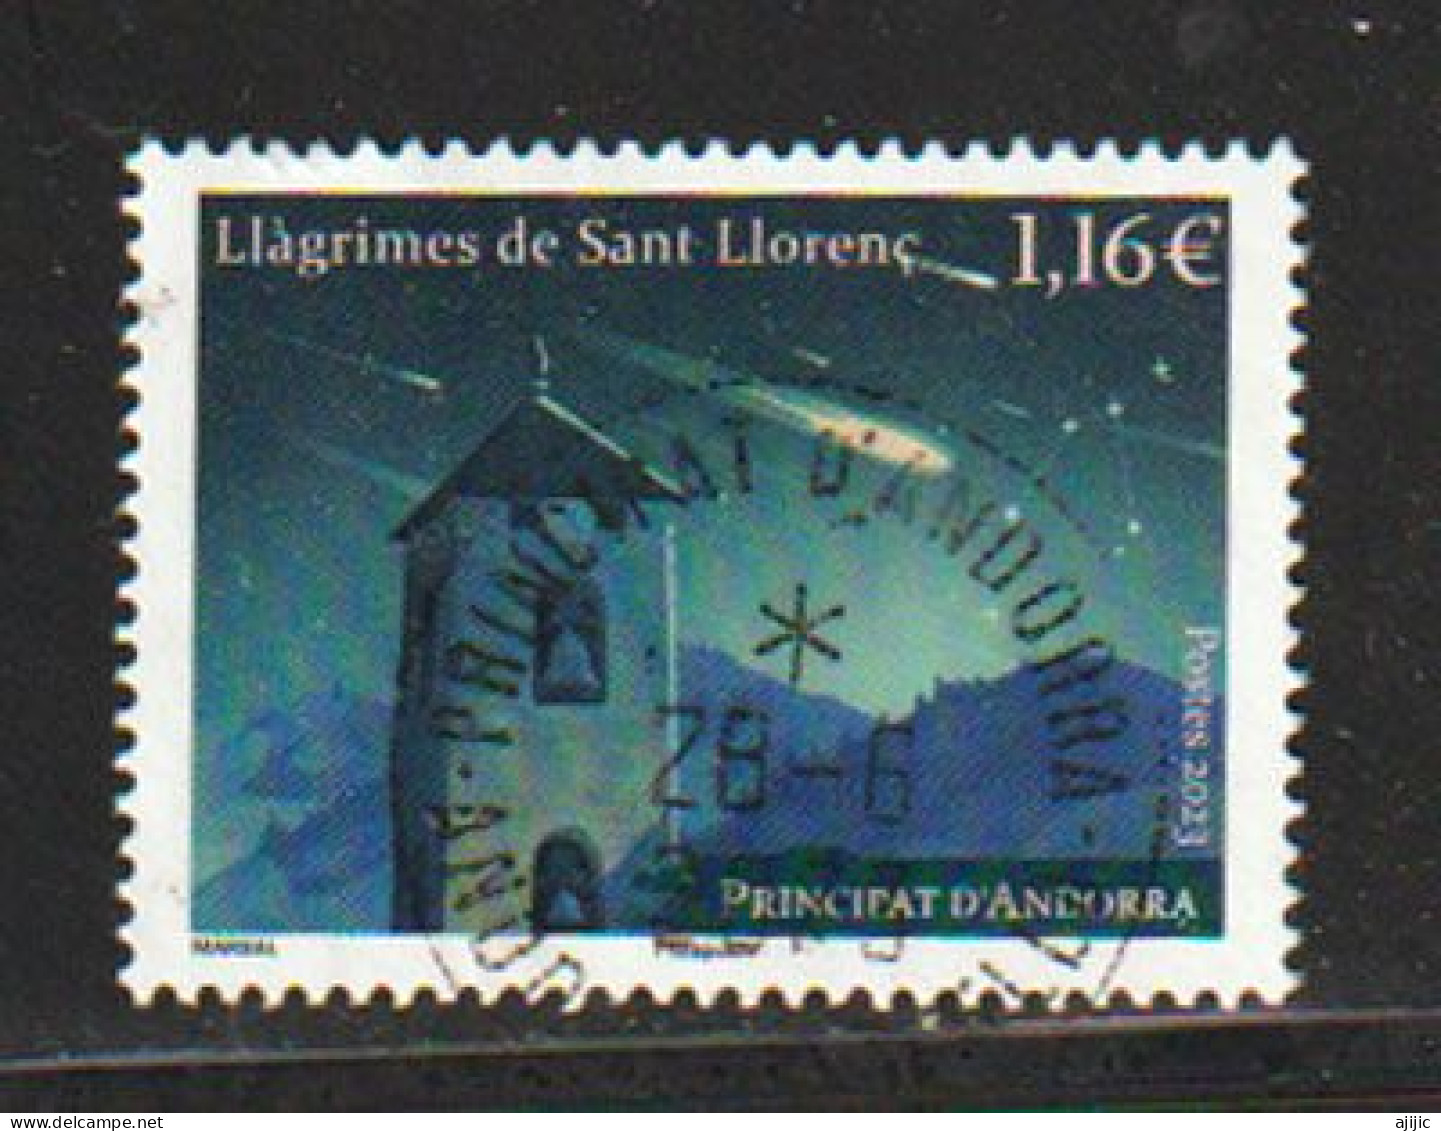 ANDORRA.. Llagrimes De Sant Llorenc (Espectacular Lluvia De Estrellas Nocturna) Perseidas. Sello Cancelado 1ª Calidad - Used Stamps